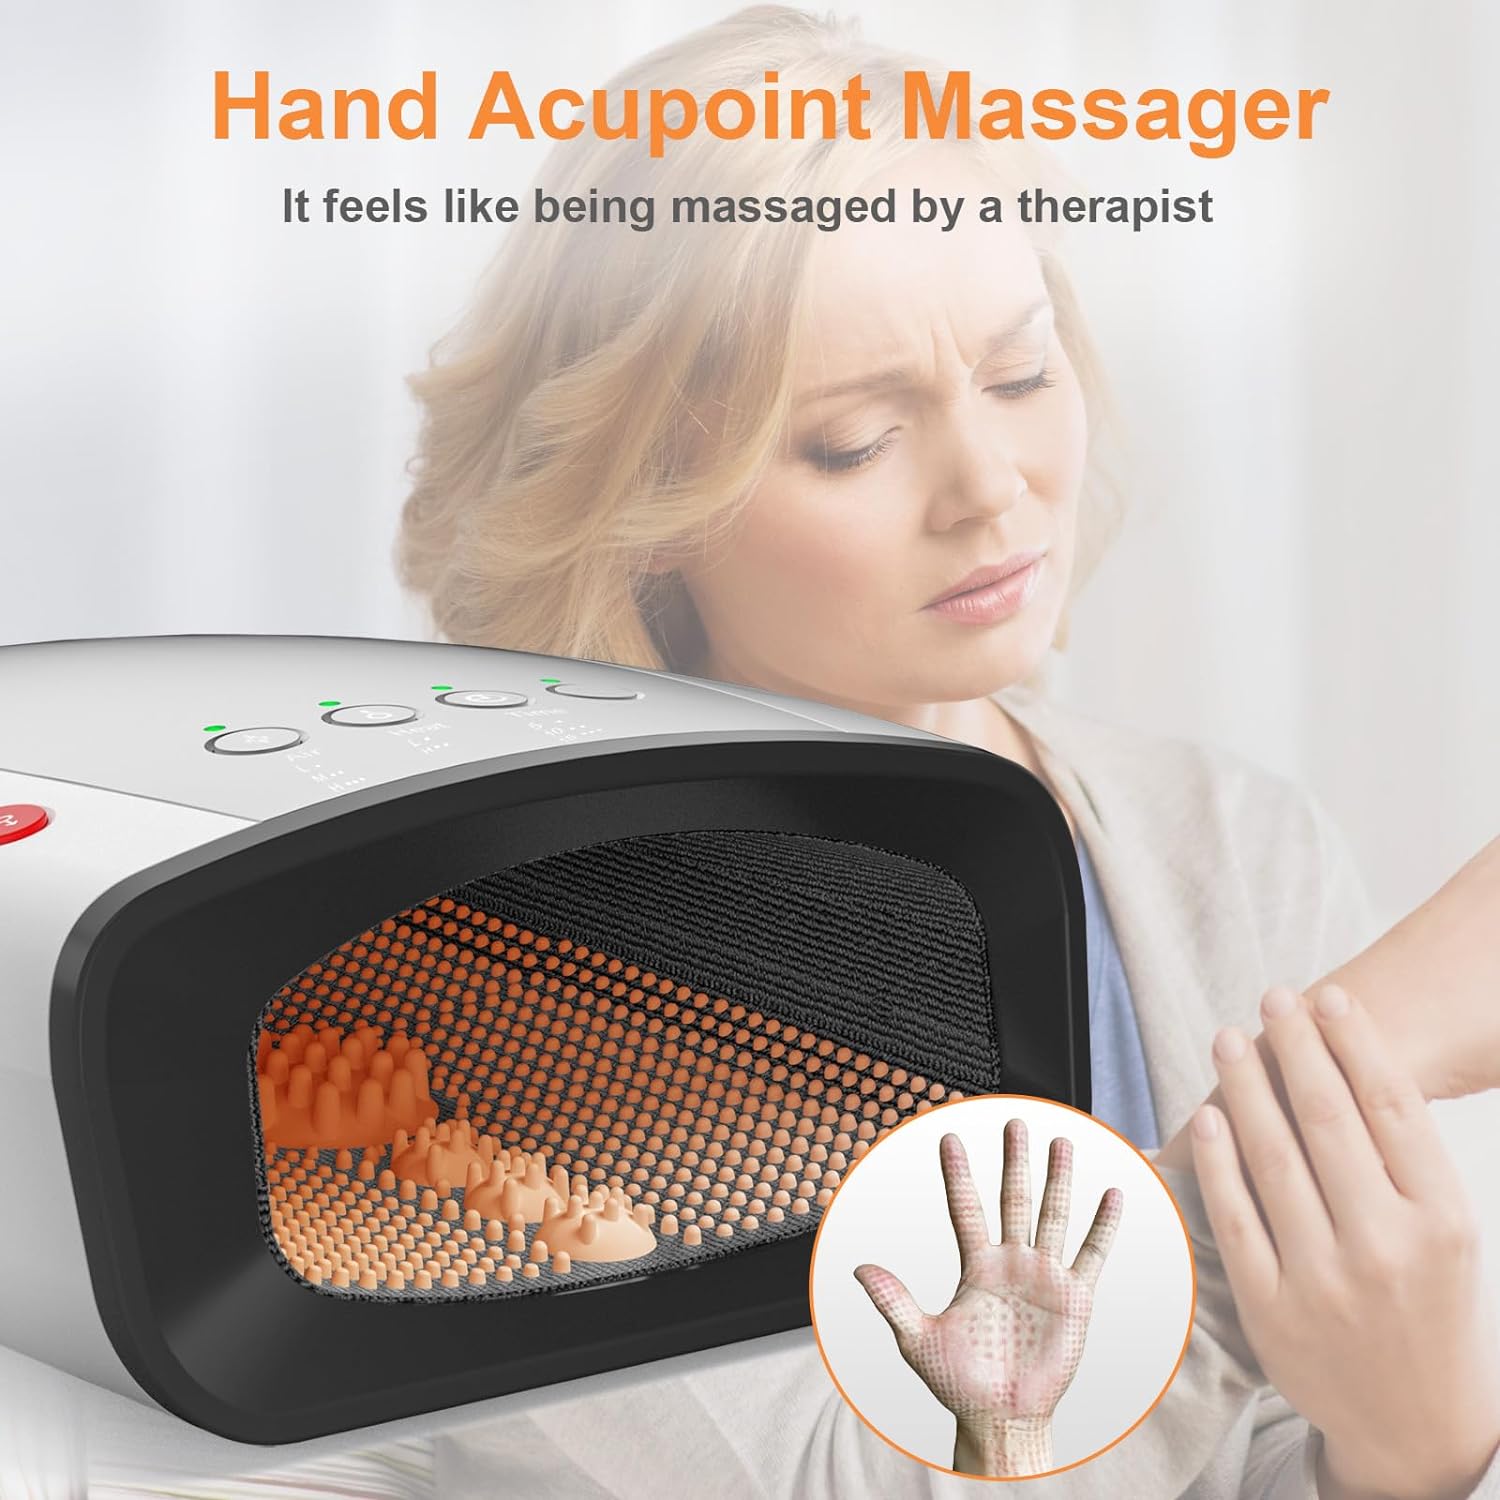 CuPiLo Hand Massager Machine - CPL-5319